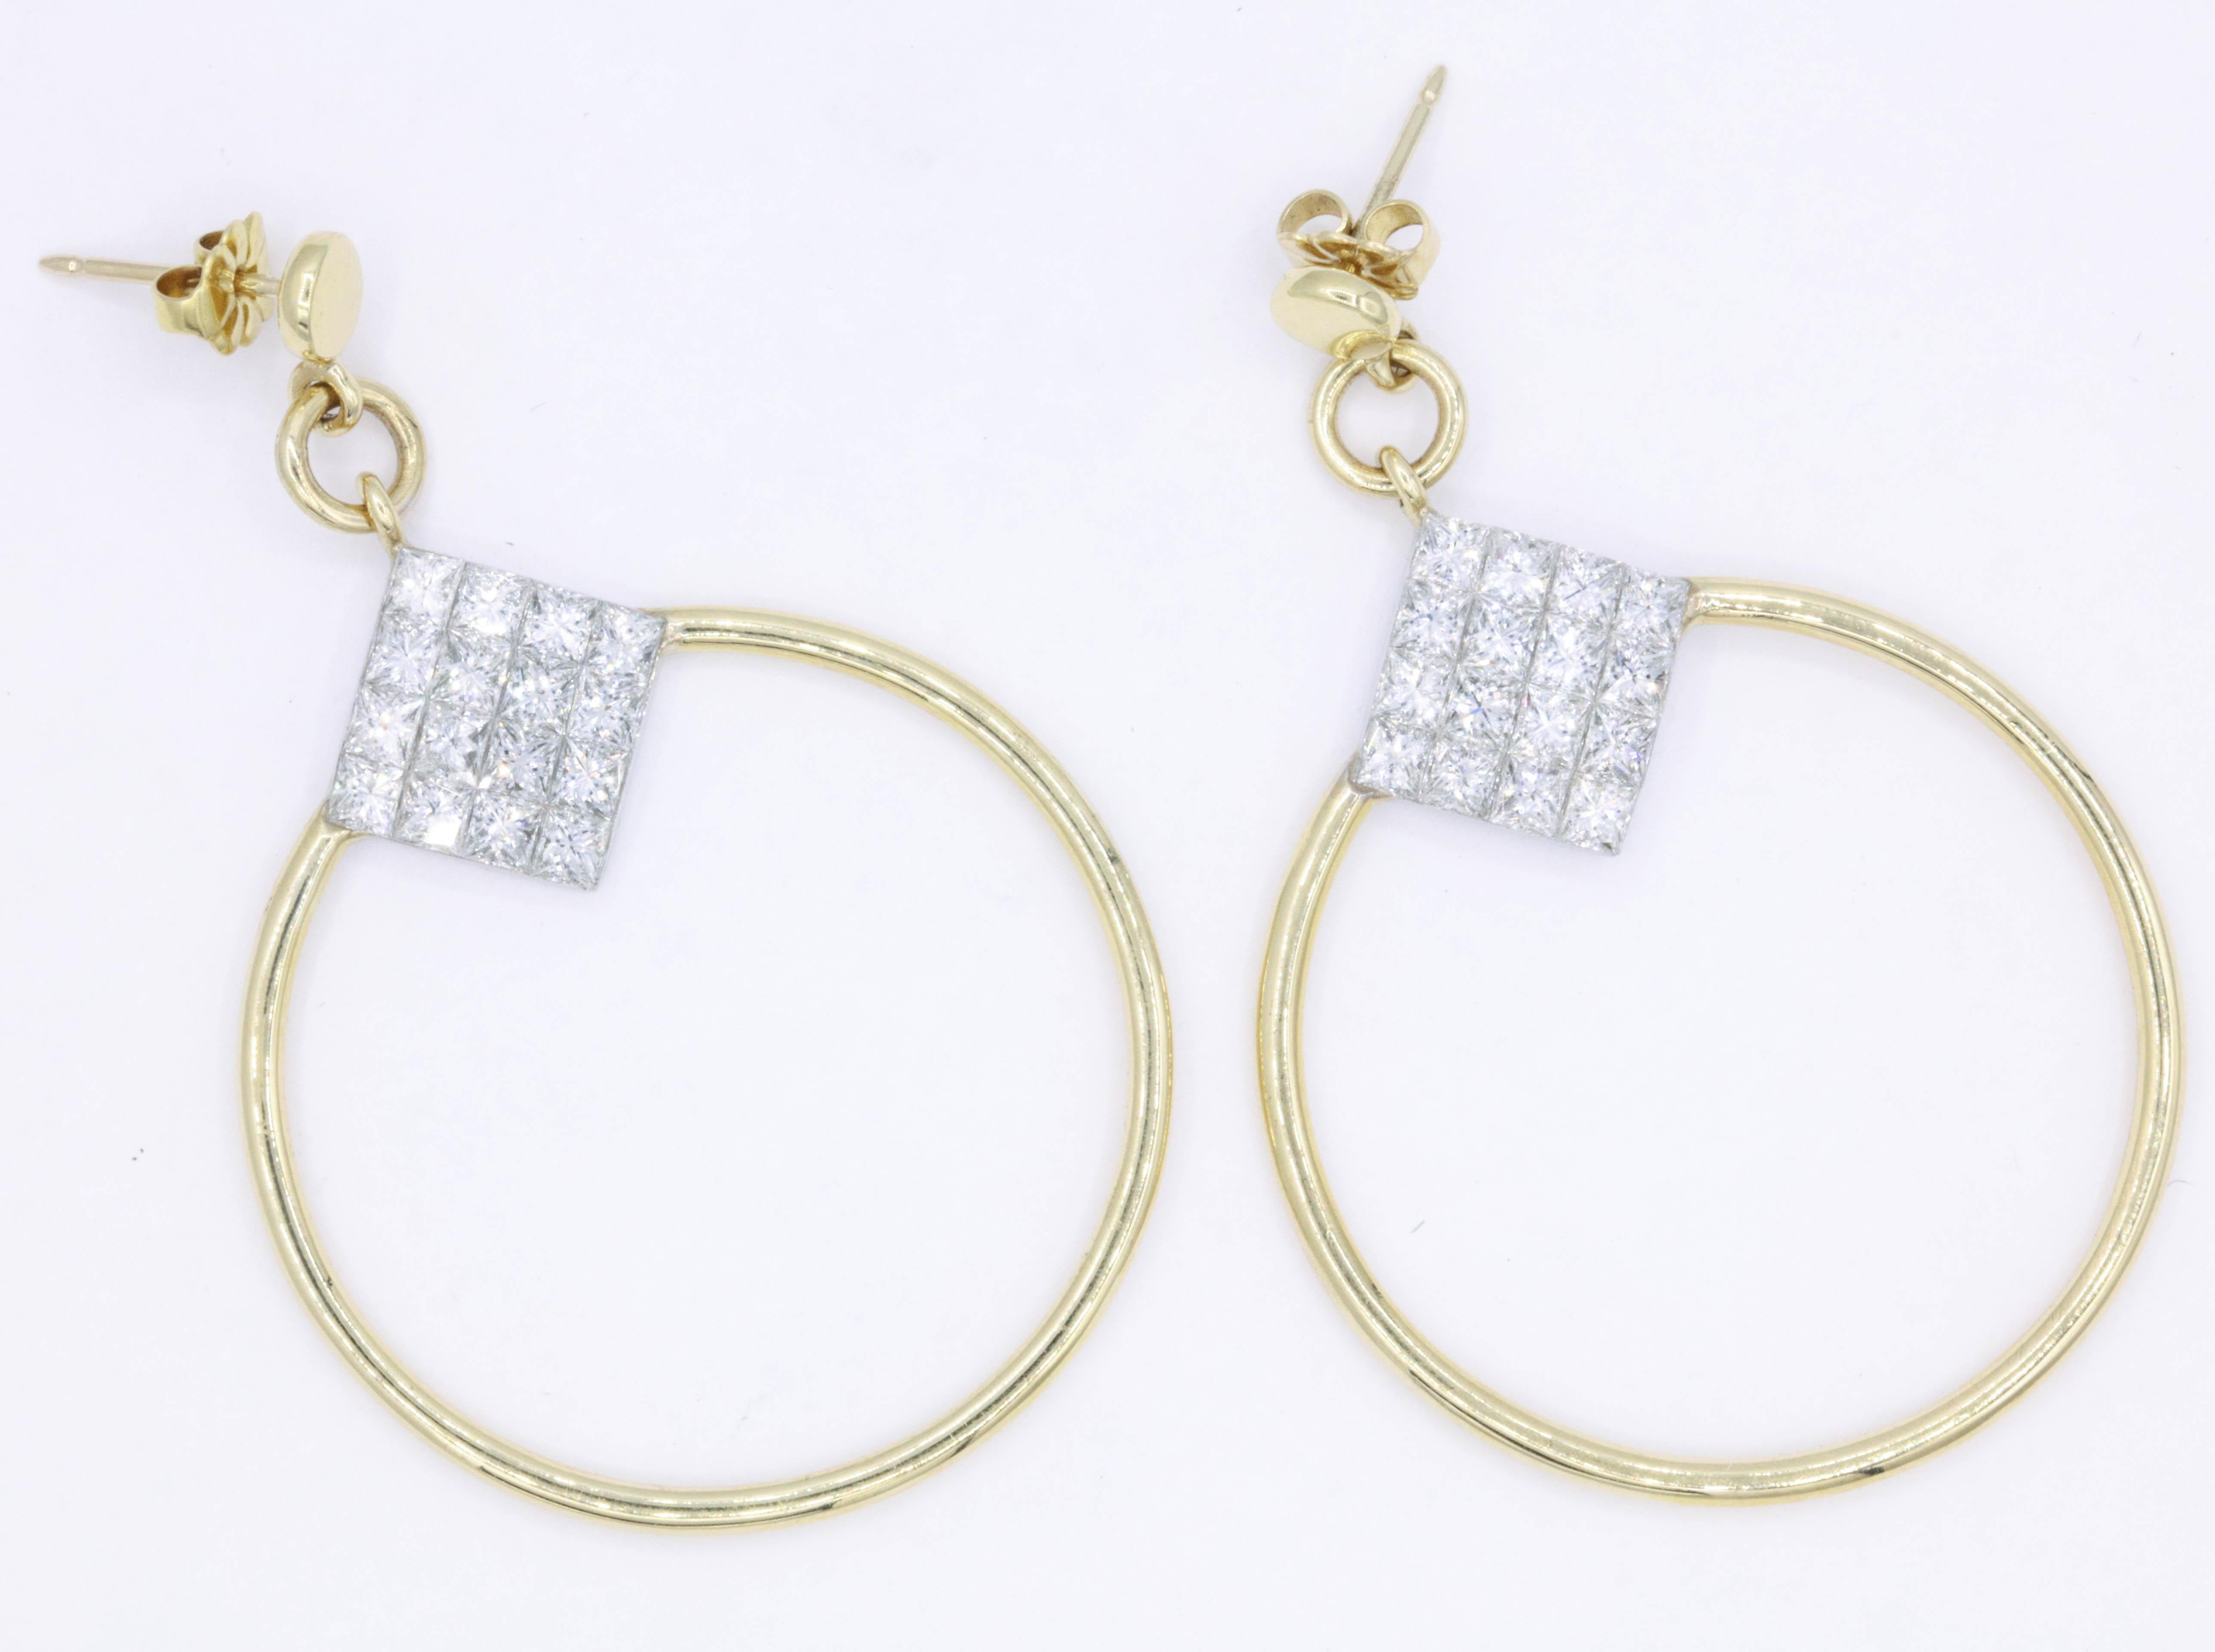 Ces boucles d'oreilles en or jaune 18 carats sont ornées de 32 diamants taille princesse pesant 4 carats. Génial, génial sur l'oreille !
Couleur : G-H
Clarté : SI